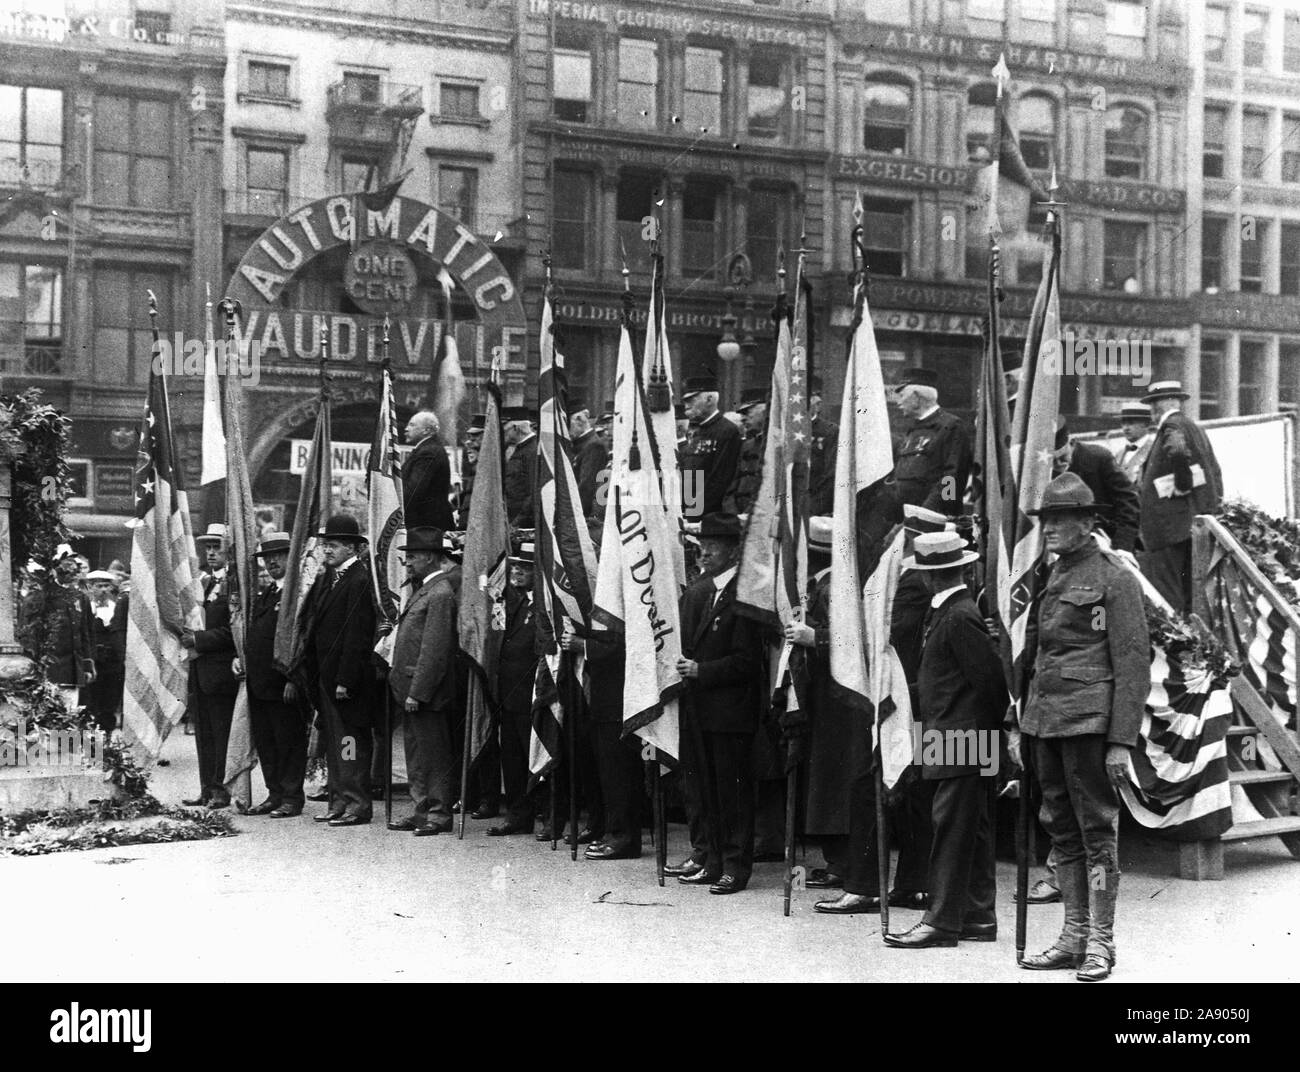 Lafayette giorno, 1918 - Lafayette Day celebrazione di New York City. Le bandiere della società patriottica presso la statua di Lafayette Union Square di New York. Nella celebrazione del 161º anniversario della gallant francese che ha combattuto per l'Indipendenza Americana Foto Stock